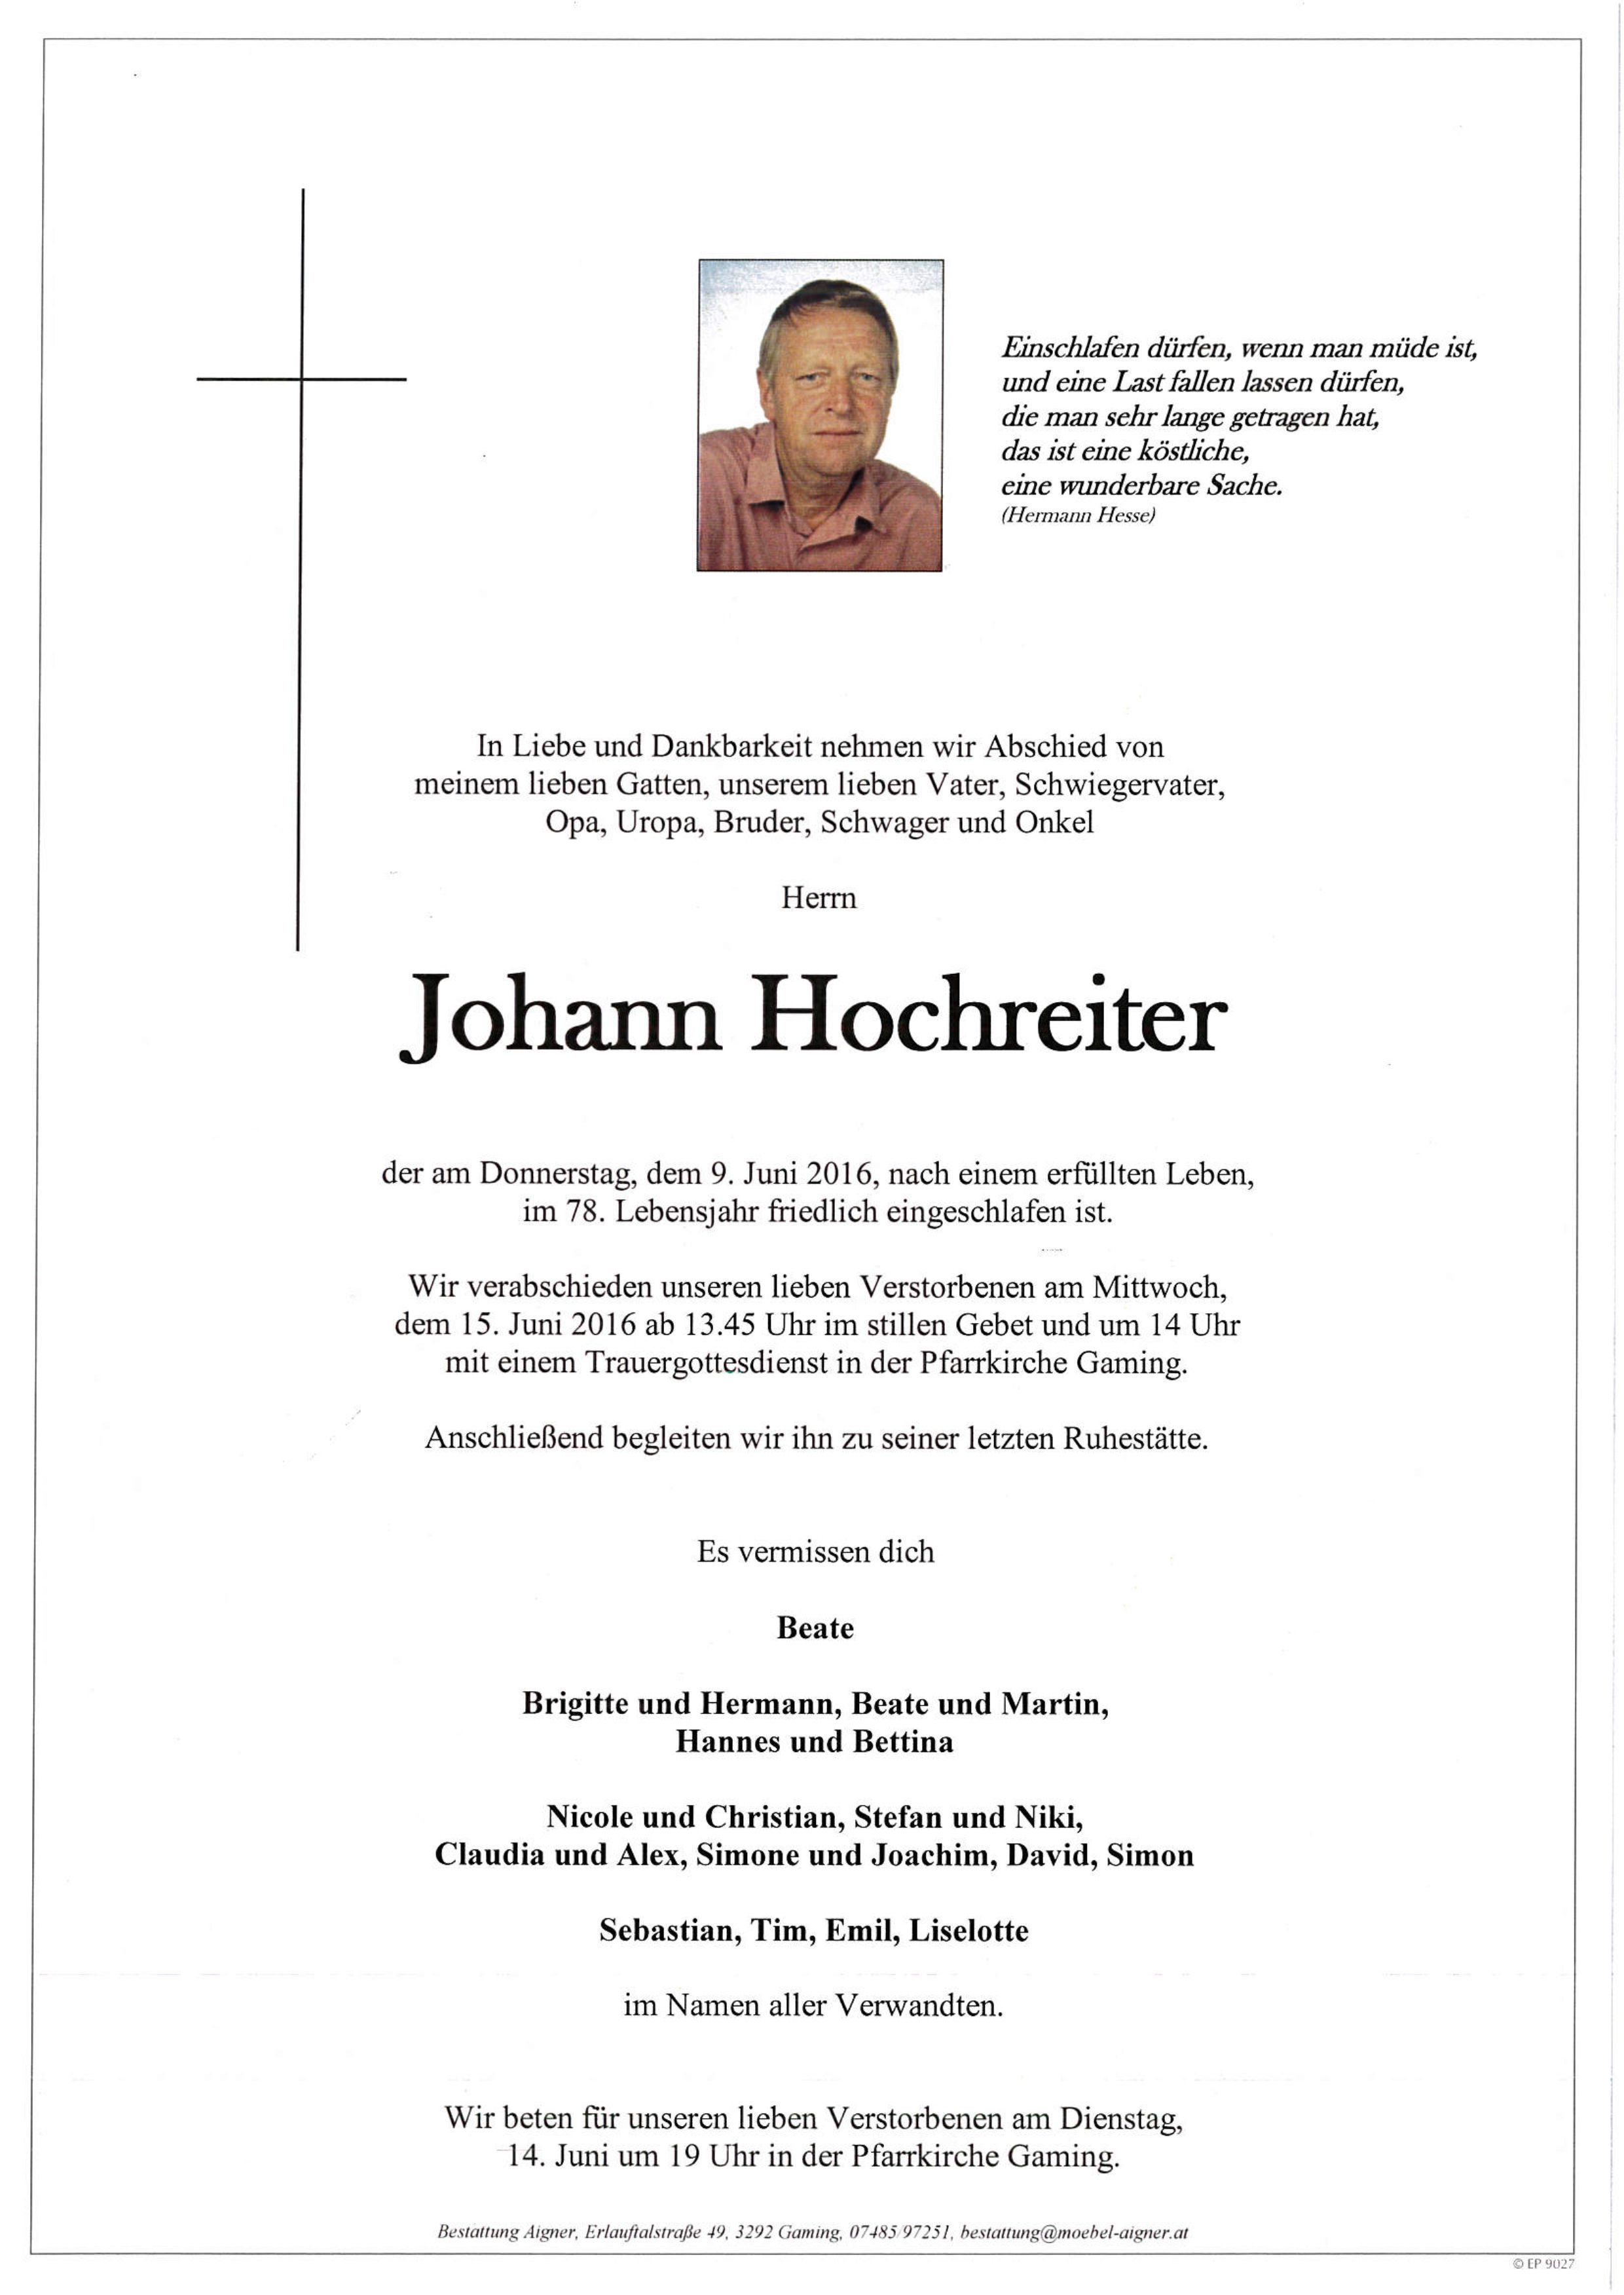 Johann Hochreiter